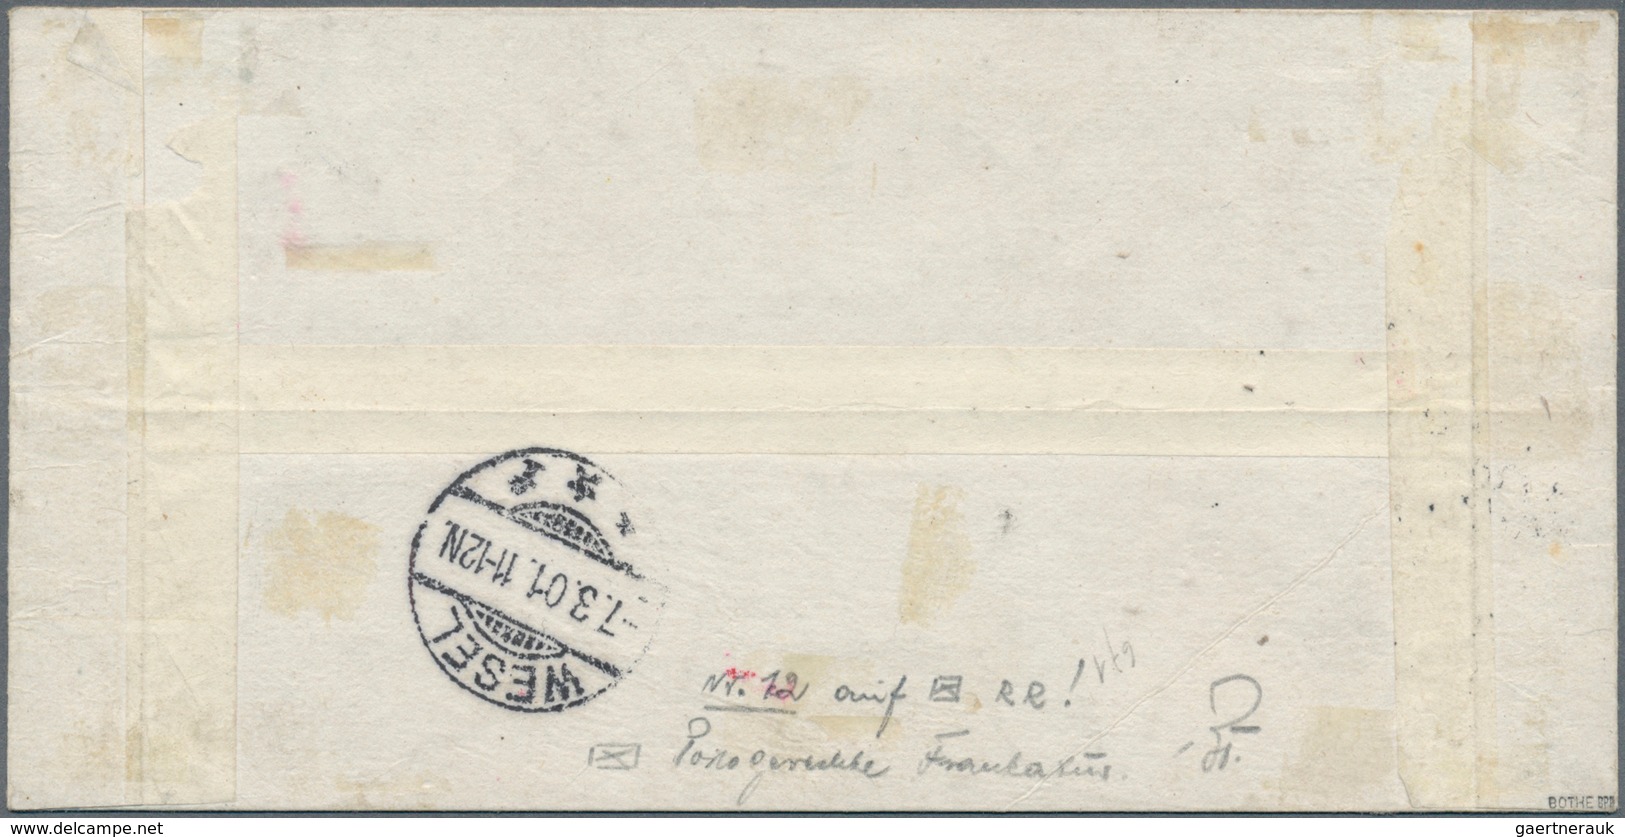 01287 Deutsche Post In China: 1900: 30 Pfg. Germania Orange/schwarz Auf Lachsfarben, Tientsin-Handstempela - China (kantoren)